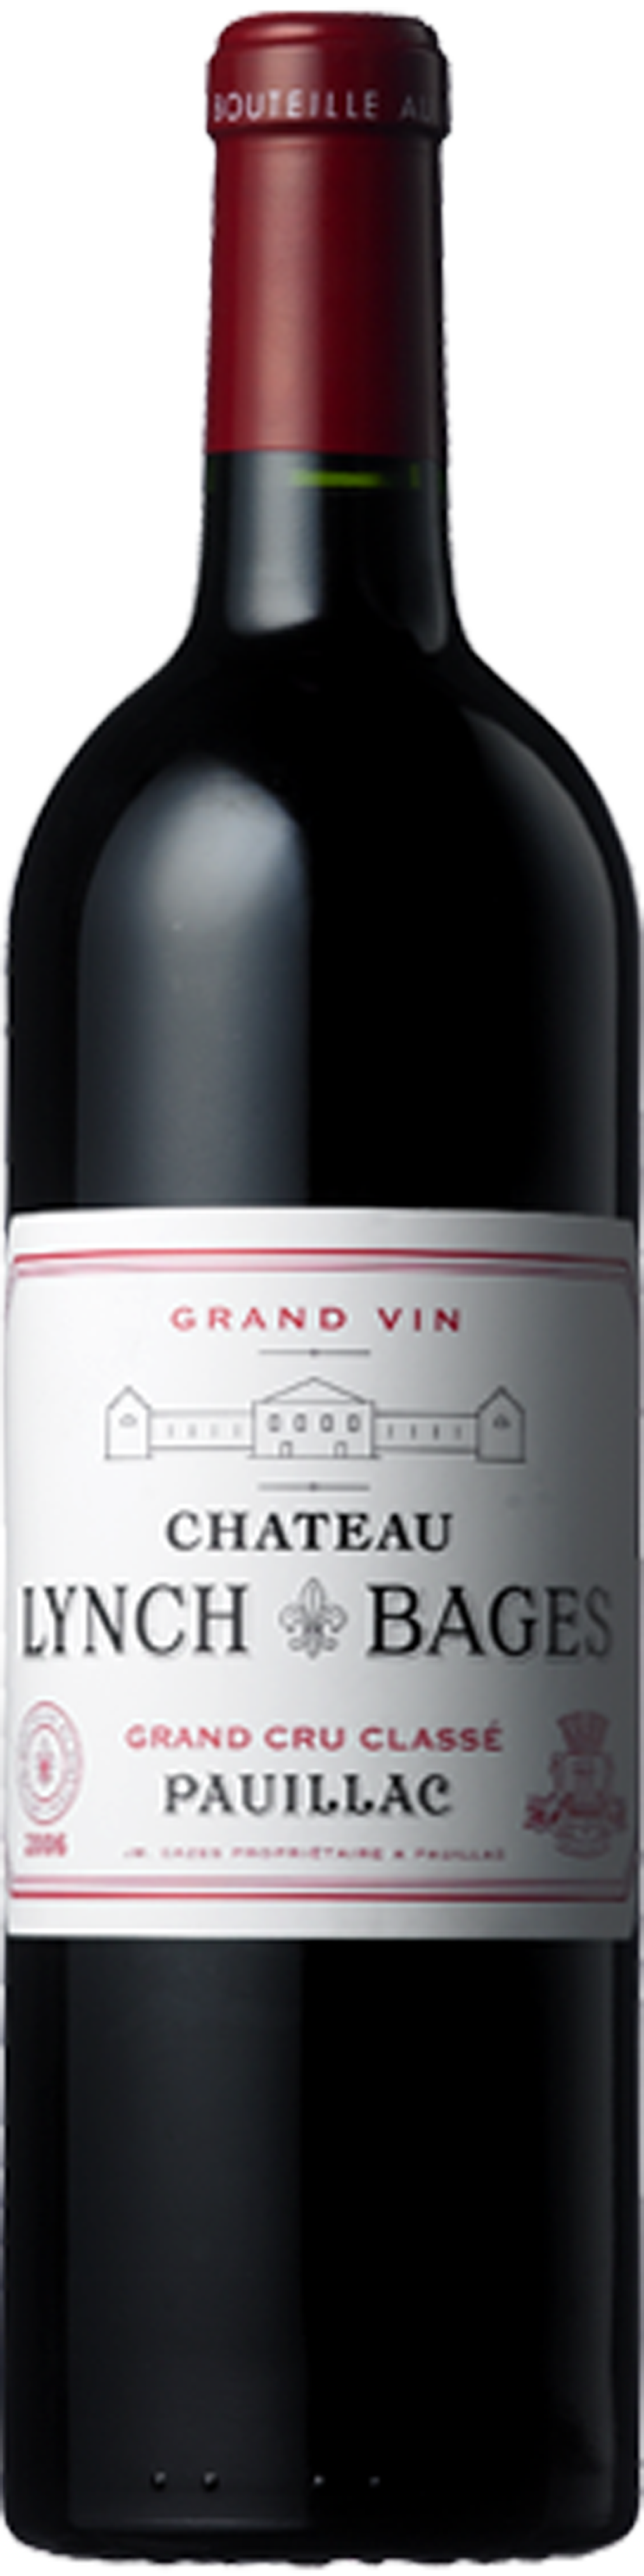 2012 Château Lynch Bages, 5ème Cru Pauillac - Armit Wines